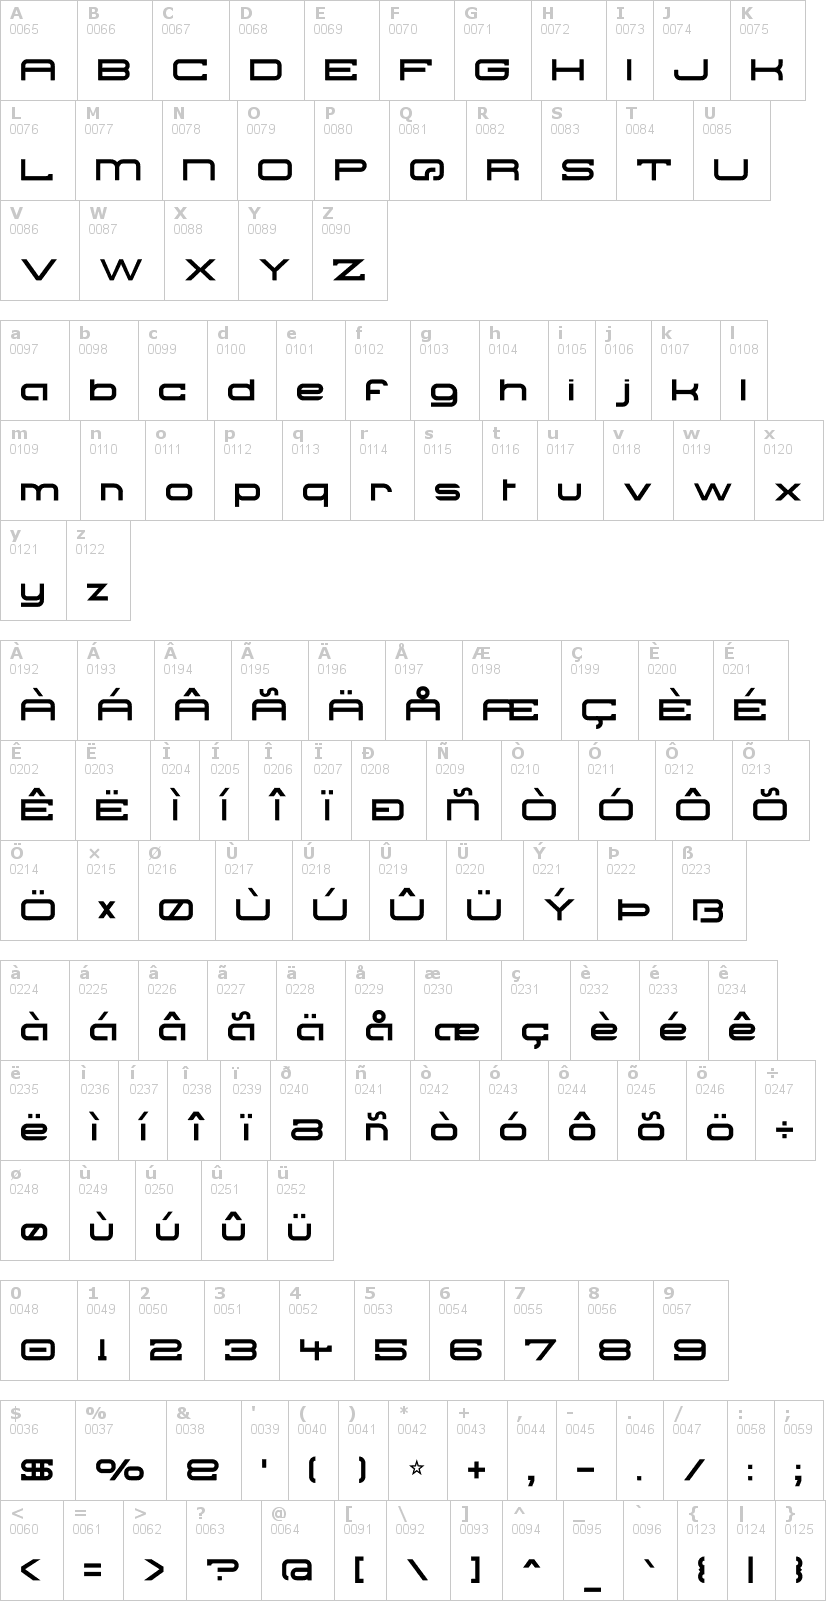 Lettere dell'alfabeto del font nsync con le quali è possibile realizzare adesivi prespaziati